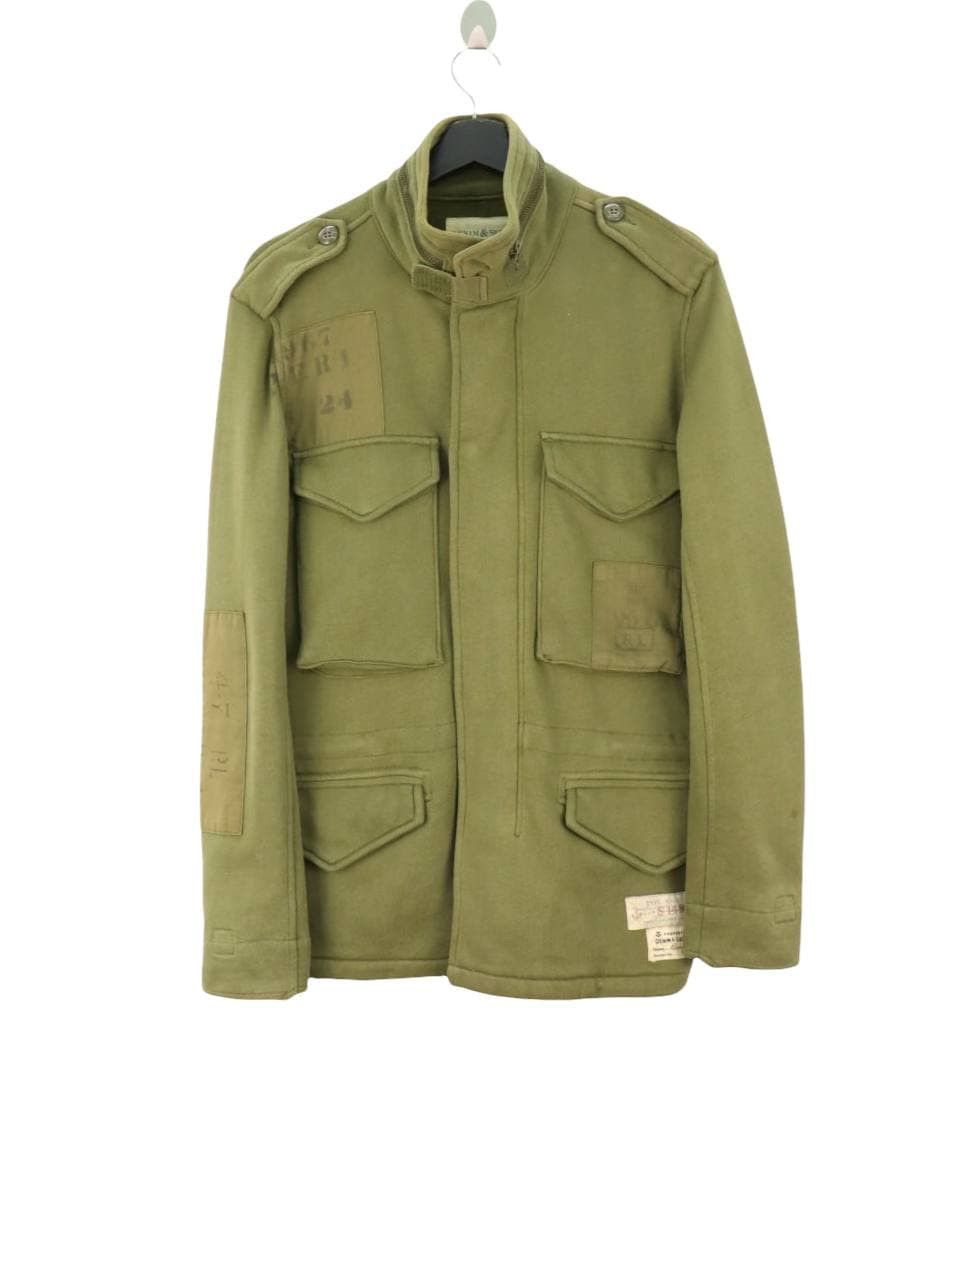 90a Womens Lauren Ralph Lauren Army Green Military Style Shirt